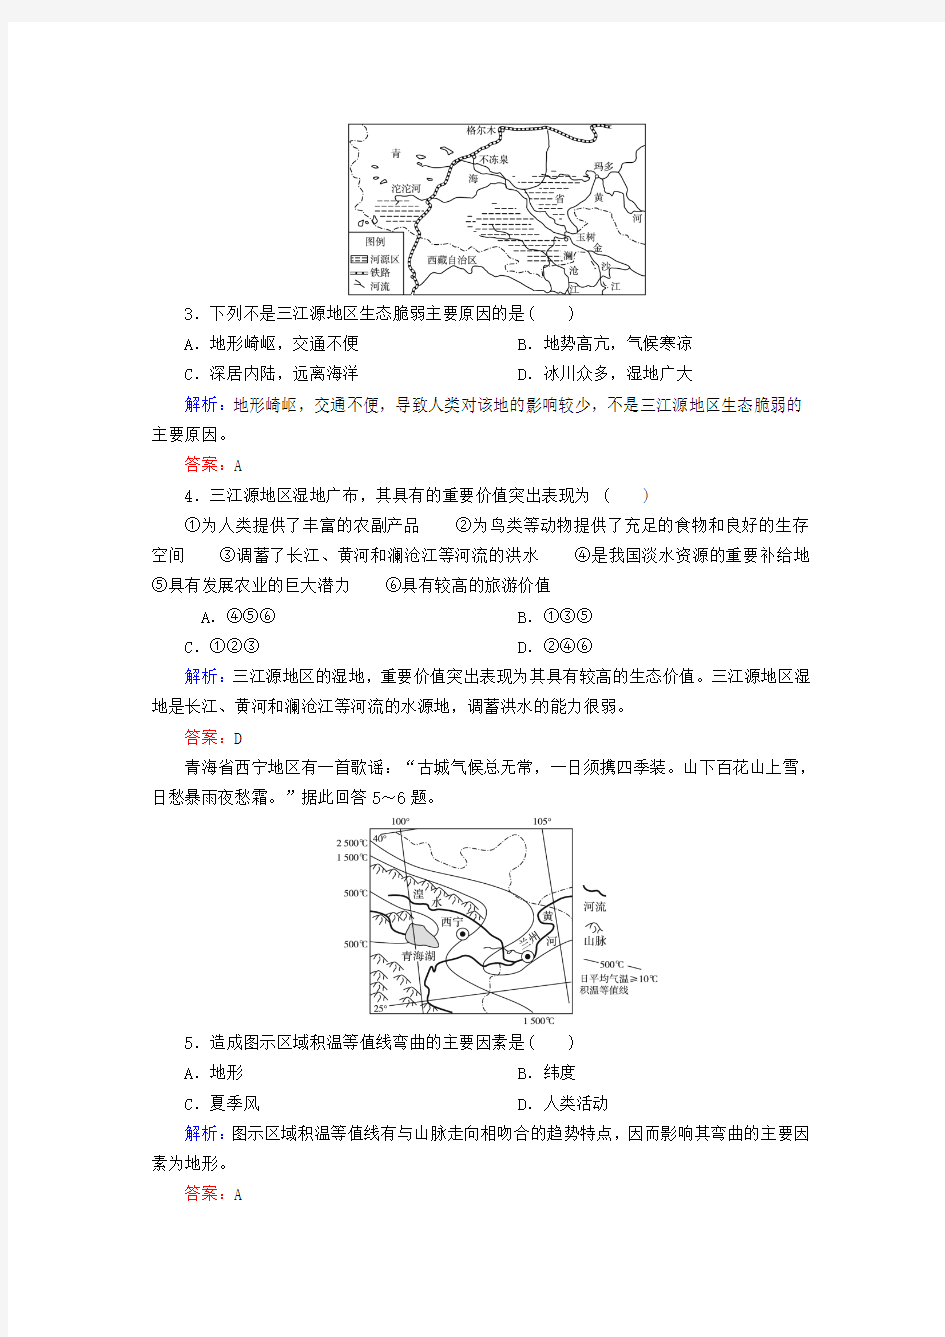 2019届高考地理区域地理专项突破作业31青藏地区——三江源地区